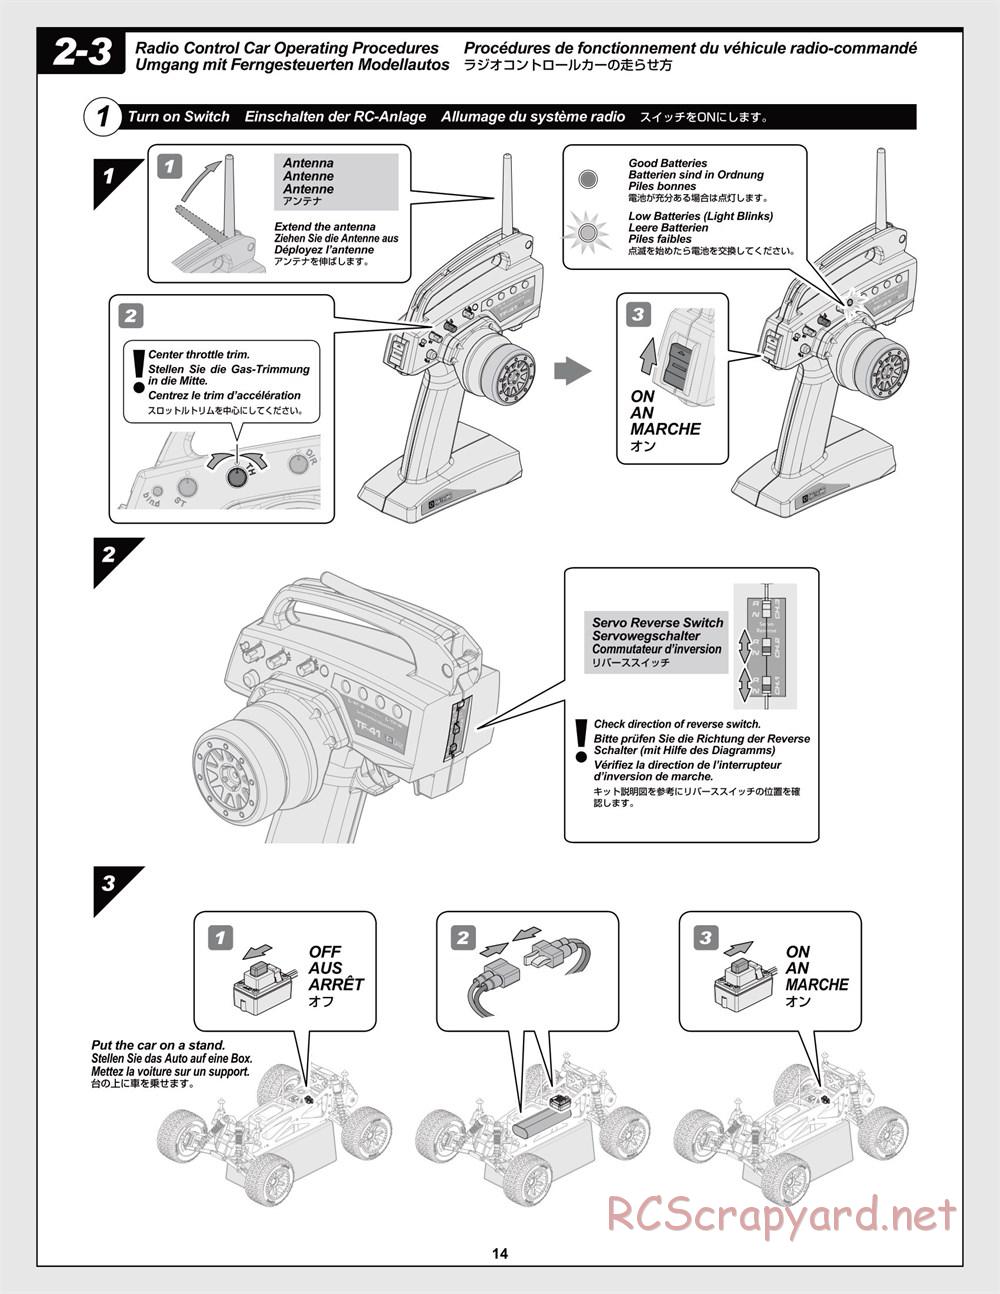 HPI - Jumpshot MT Flux - Manual - Page 14